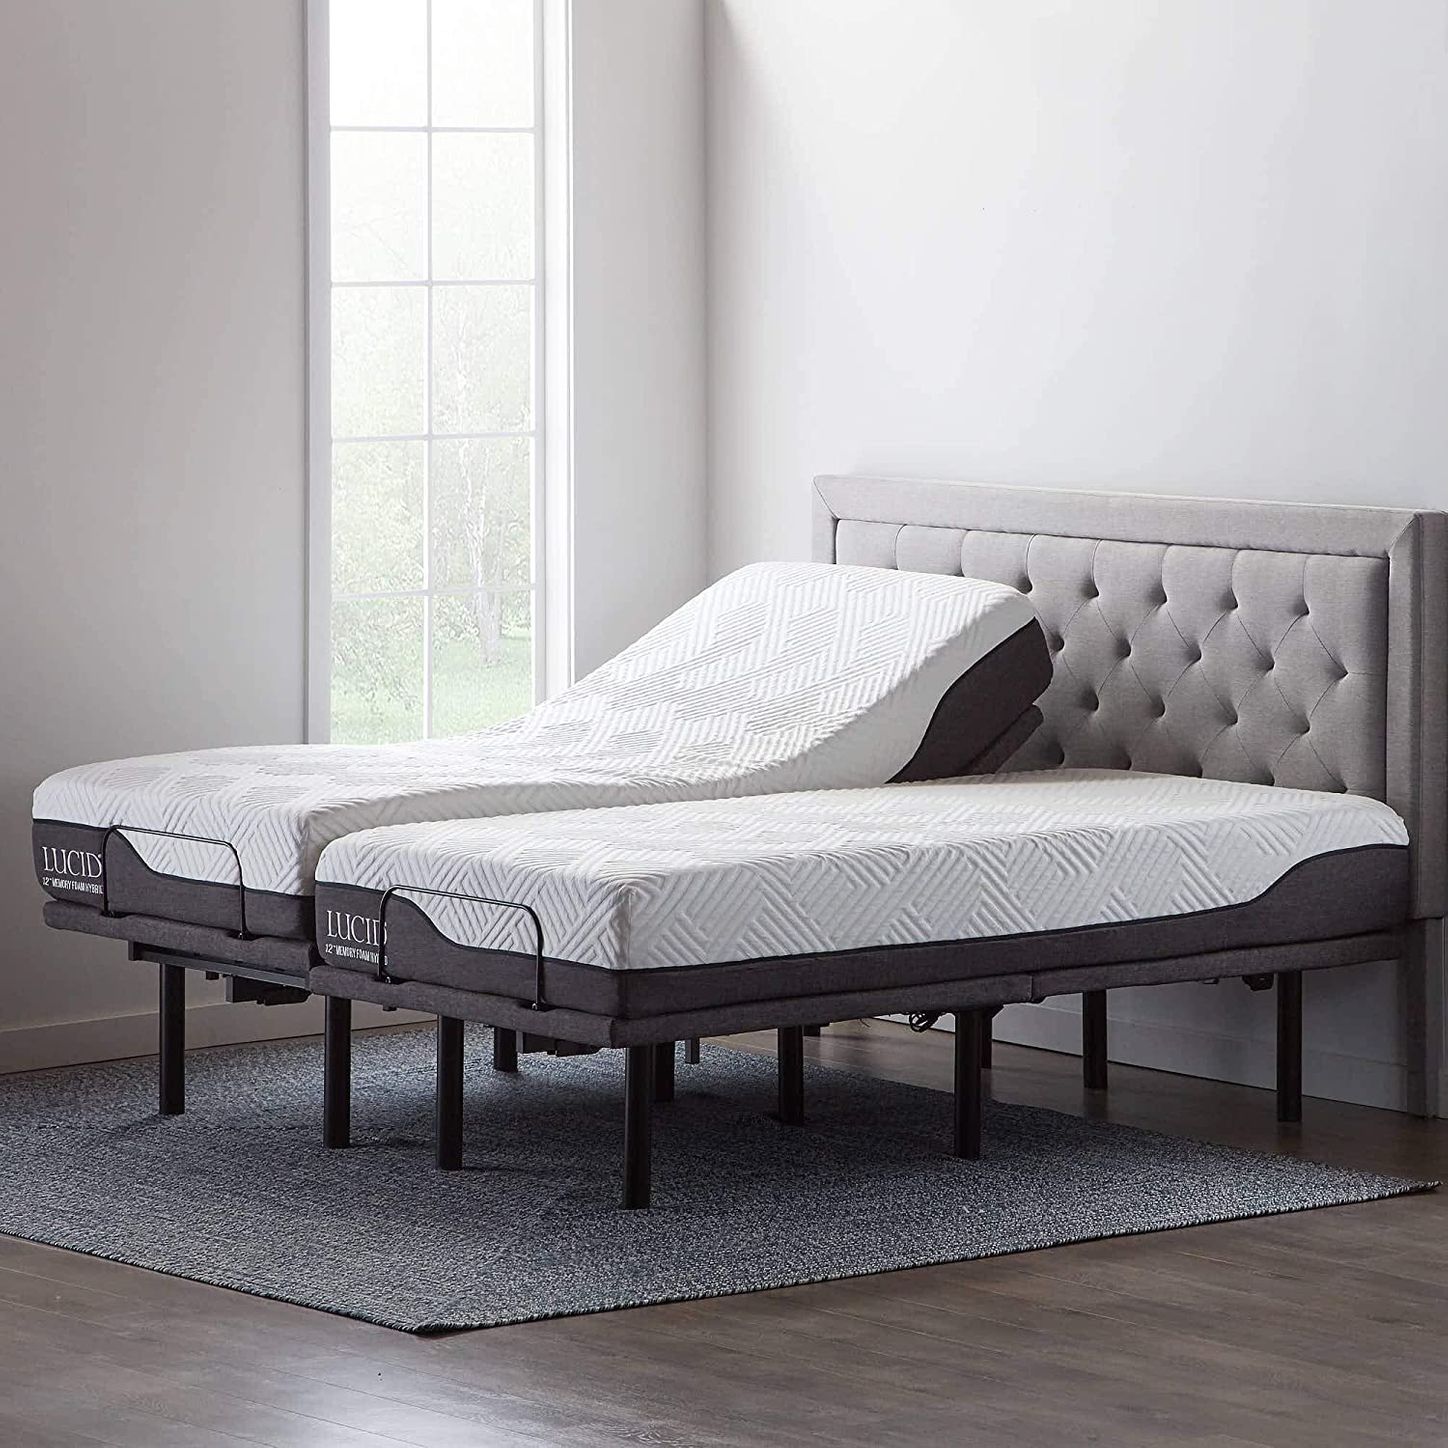 10 Best Adjustable Bed Bases 2021 The, How To Make A Split King Adjustable Bed